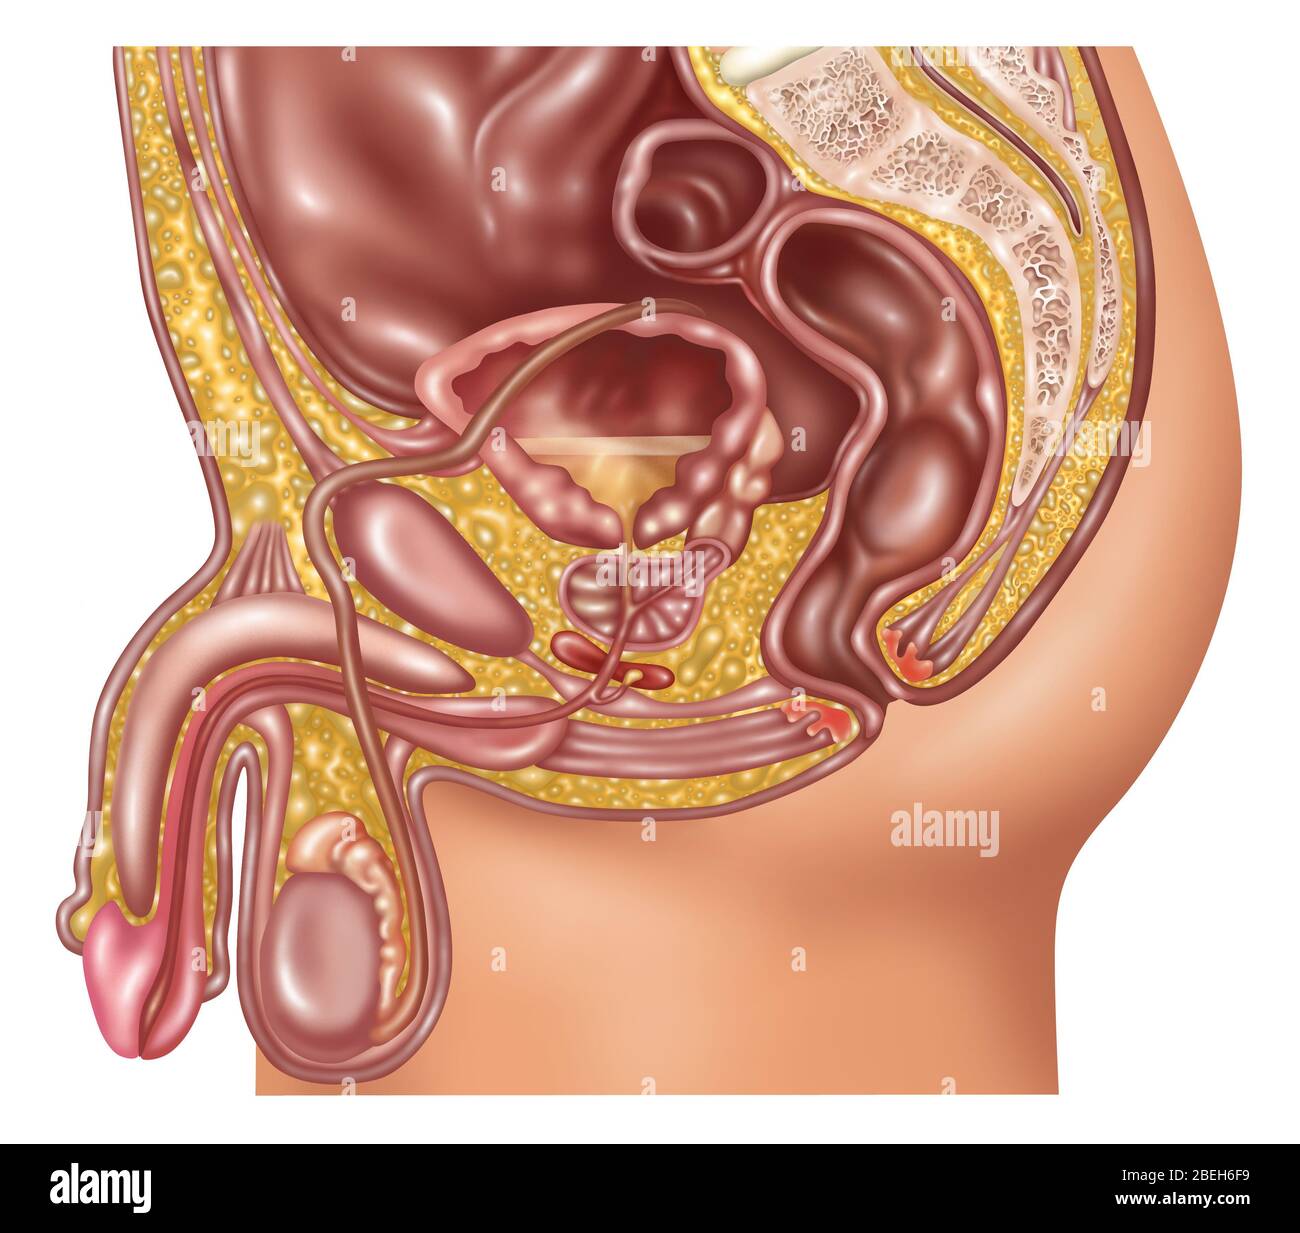 Illustration d'une prostate normale. La glande de prostate est responsable de la sécrétion de fluide qui nourrit et protège les spermatozoïdes. Au moment de l'éjaculation, le liquide presse prostré dans l'urètre qui est ensuite expulsé avec le sperme que le sperme. Banque D'Images